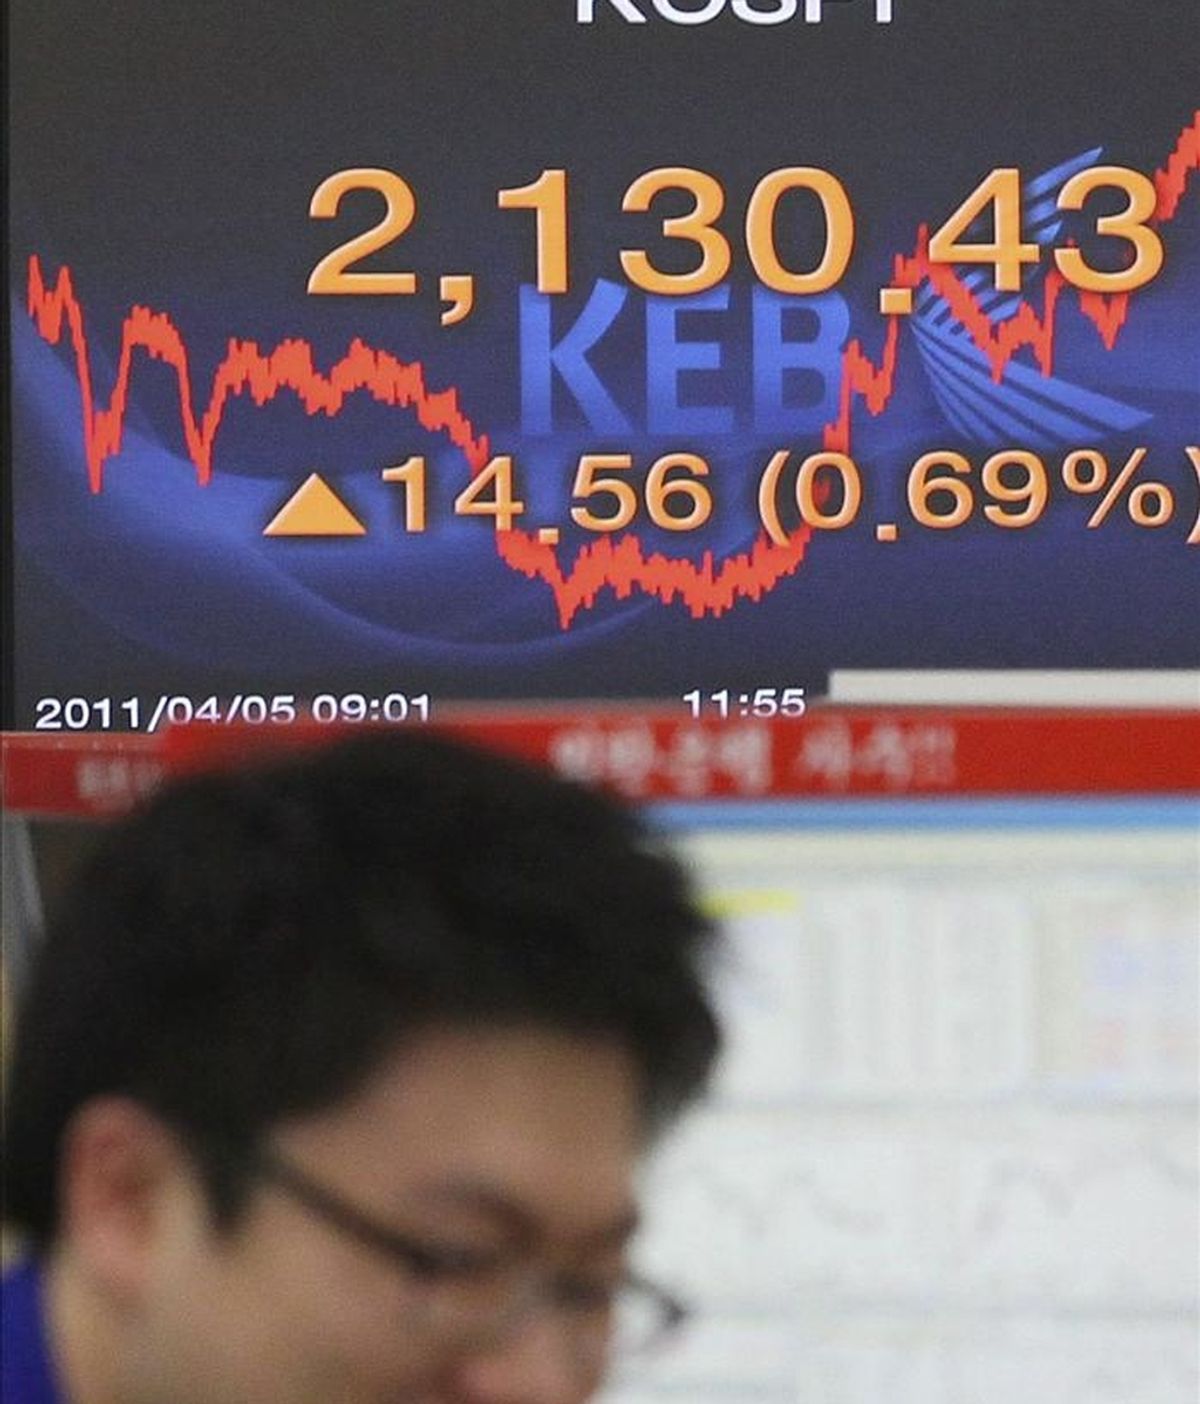 Una pantalla electrónica muestra el índice Kospi del mercado surcoreano.EFE/Archivo